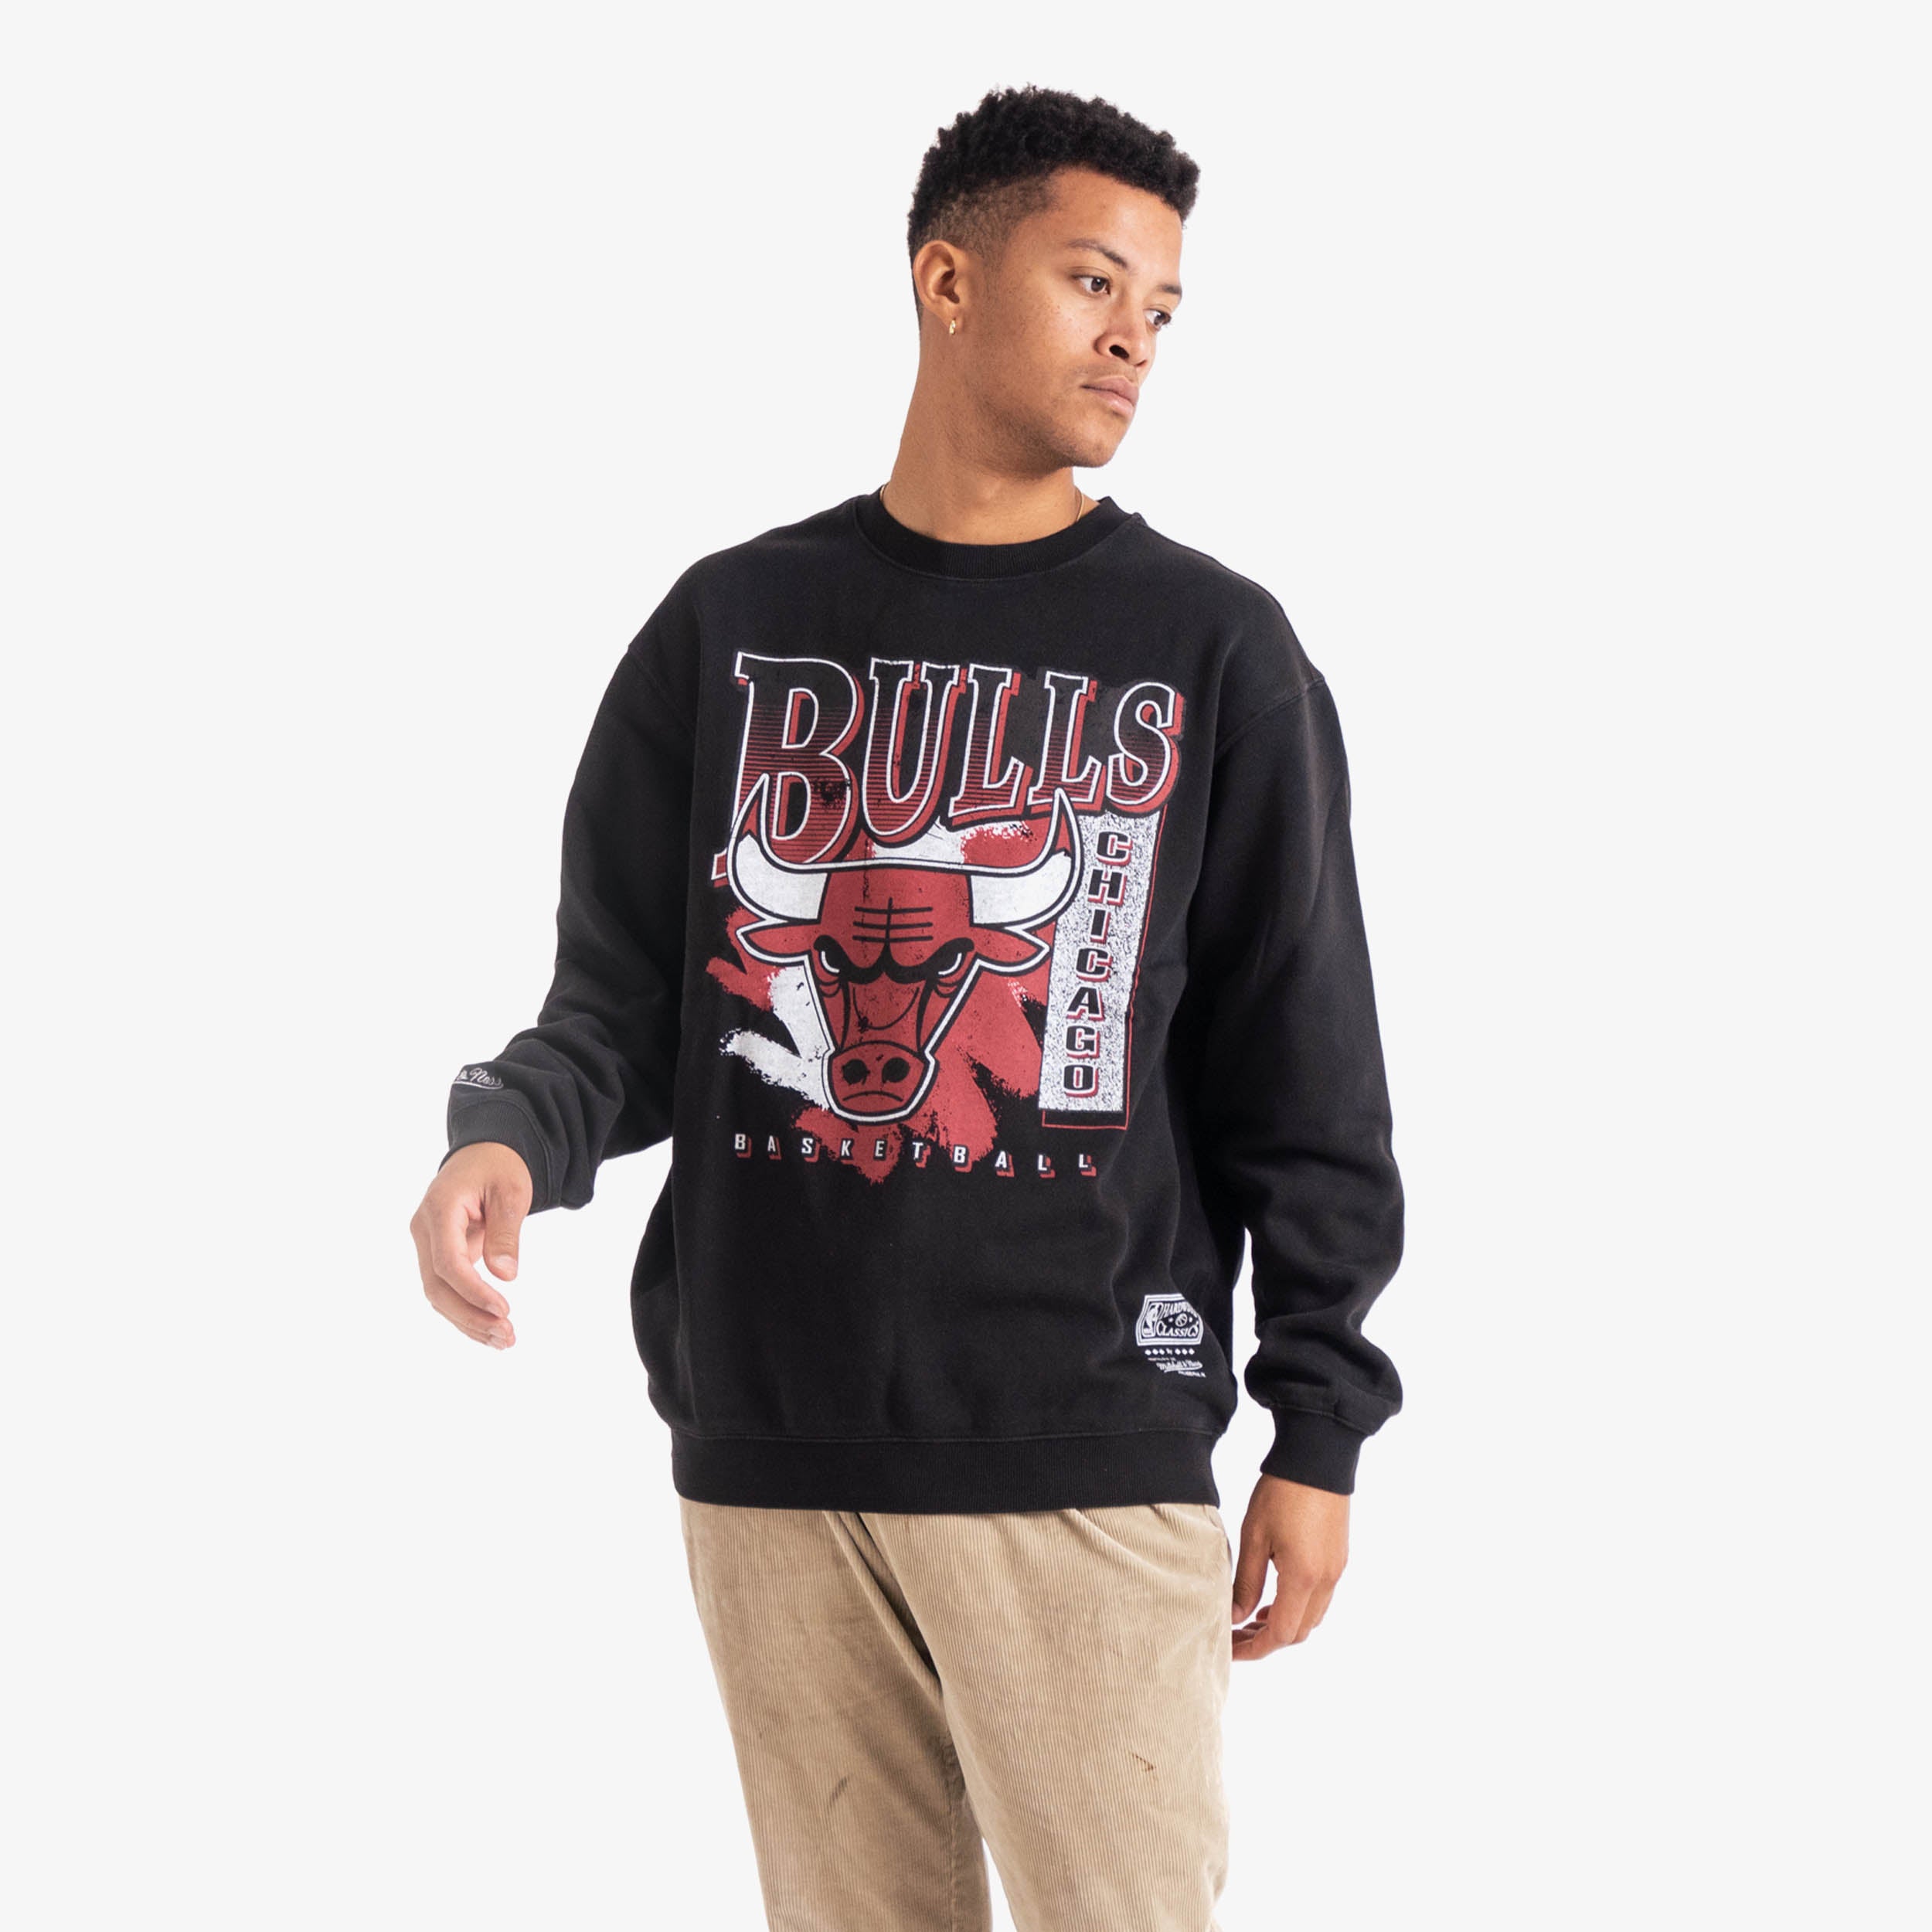 Derrick Rose Chicago Bulls NBA Basketball shirt, hoodie, sweater